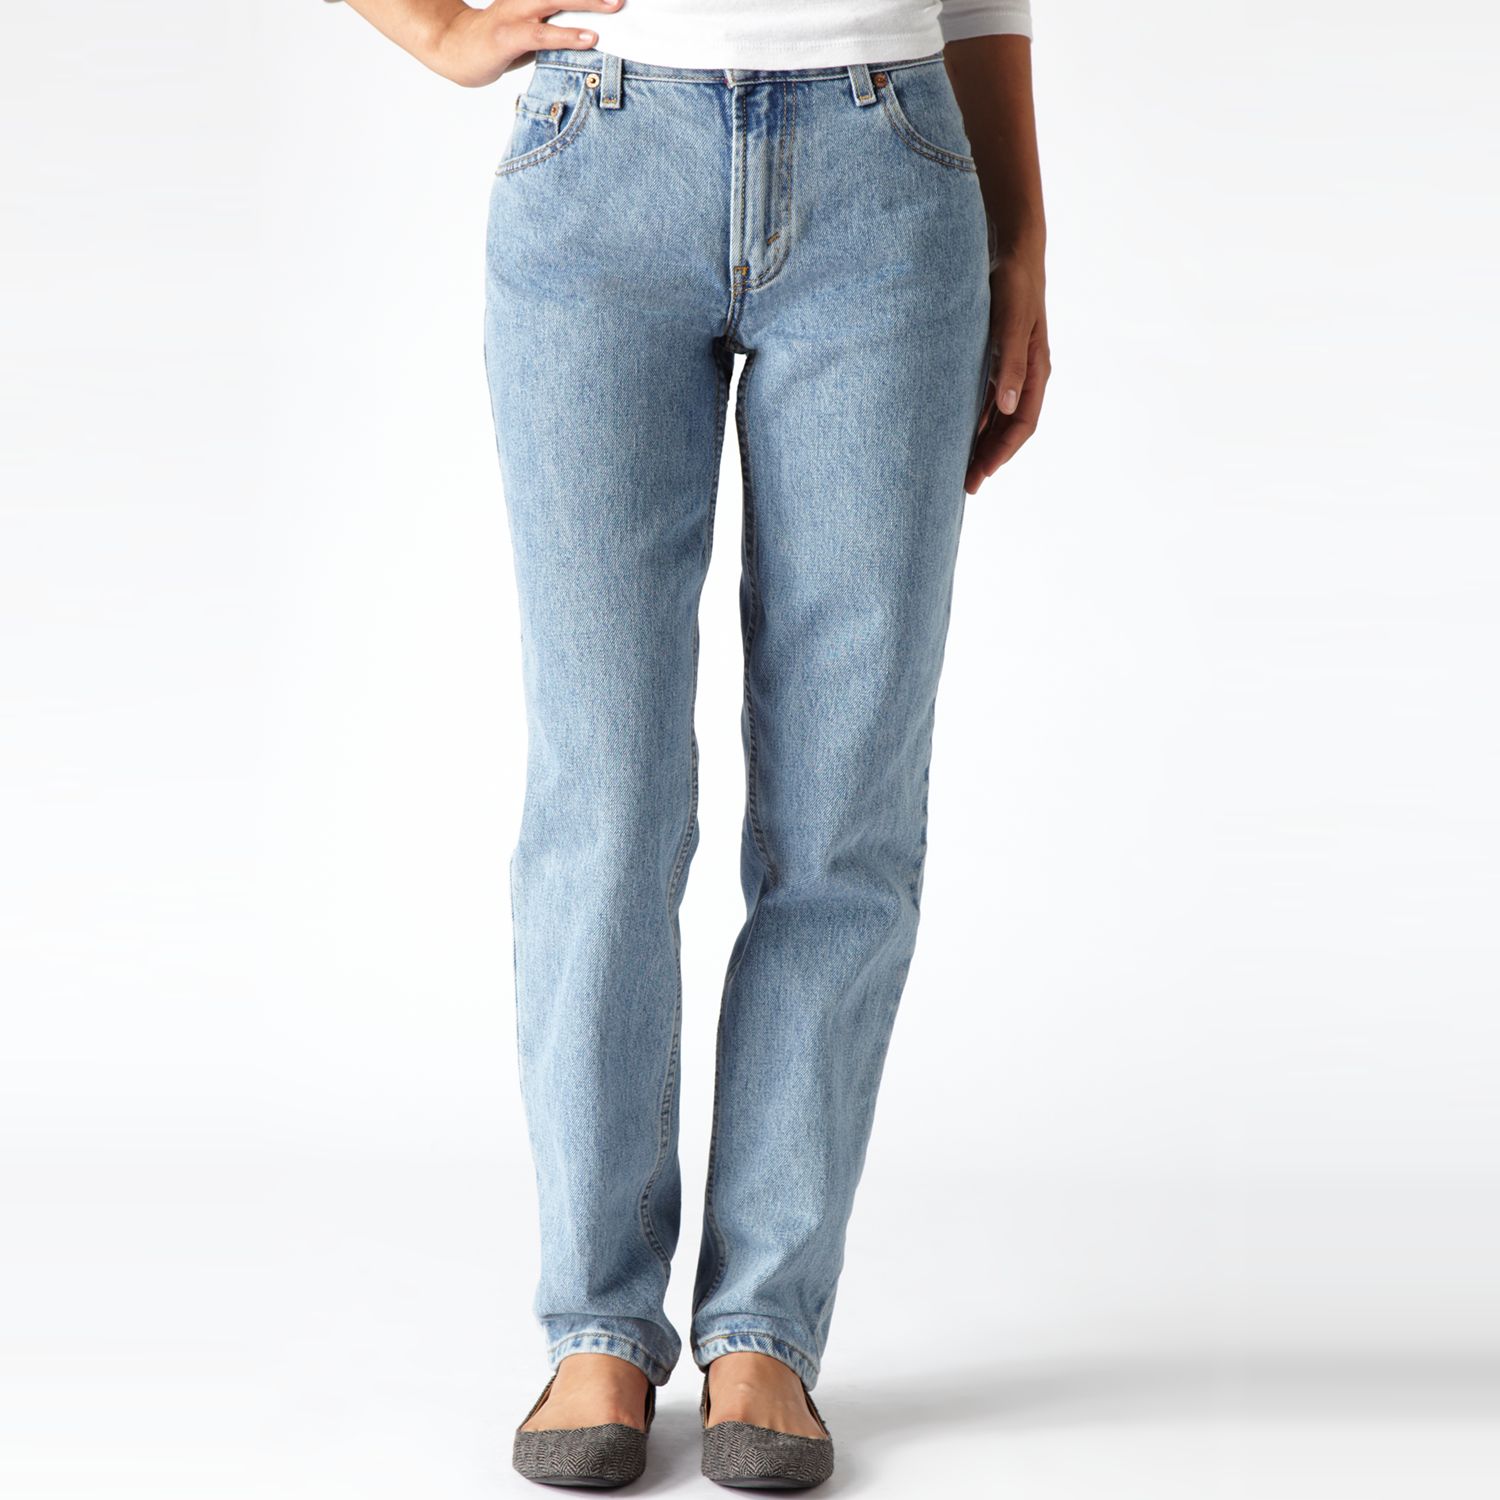 levis 550 jeans womens